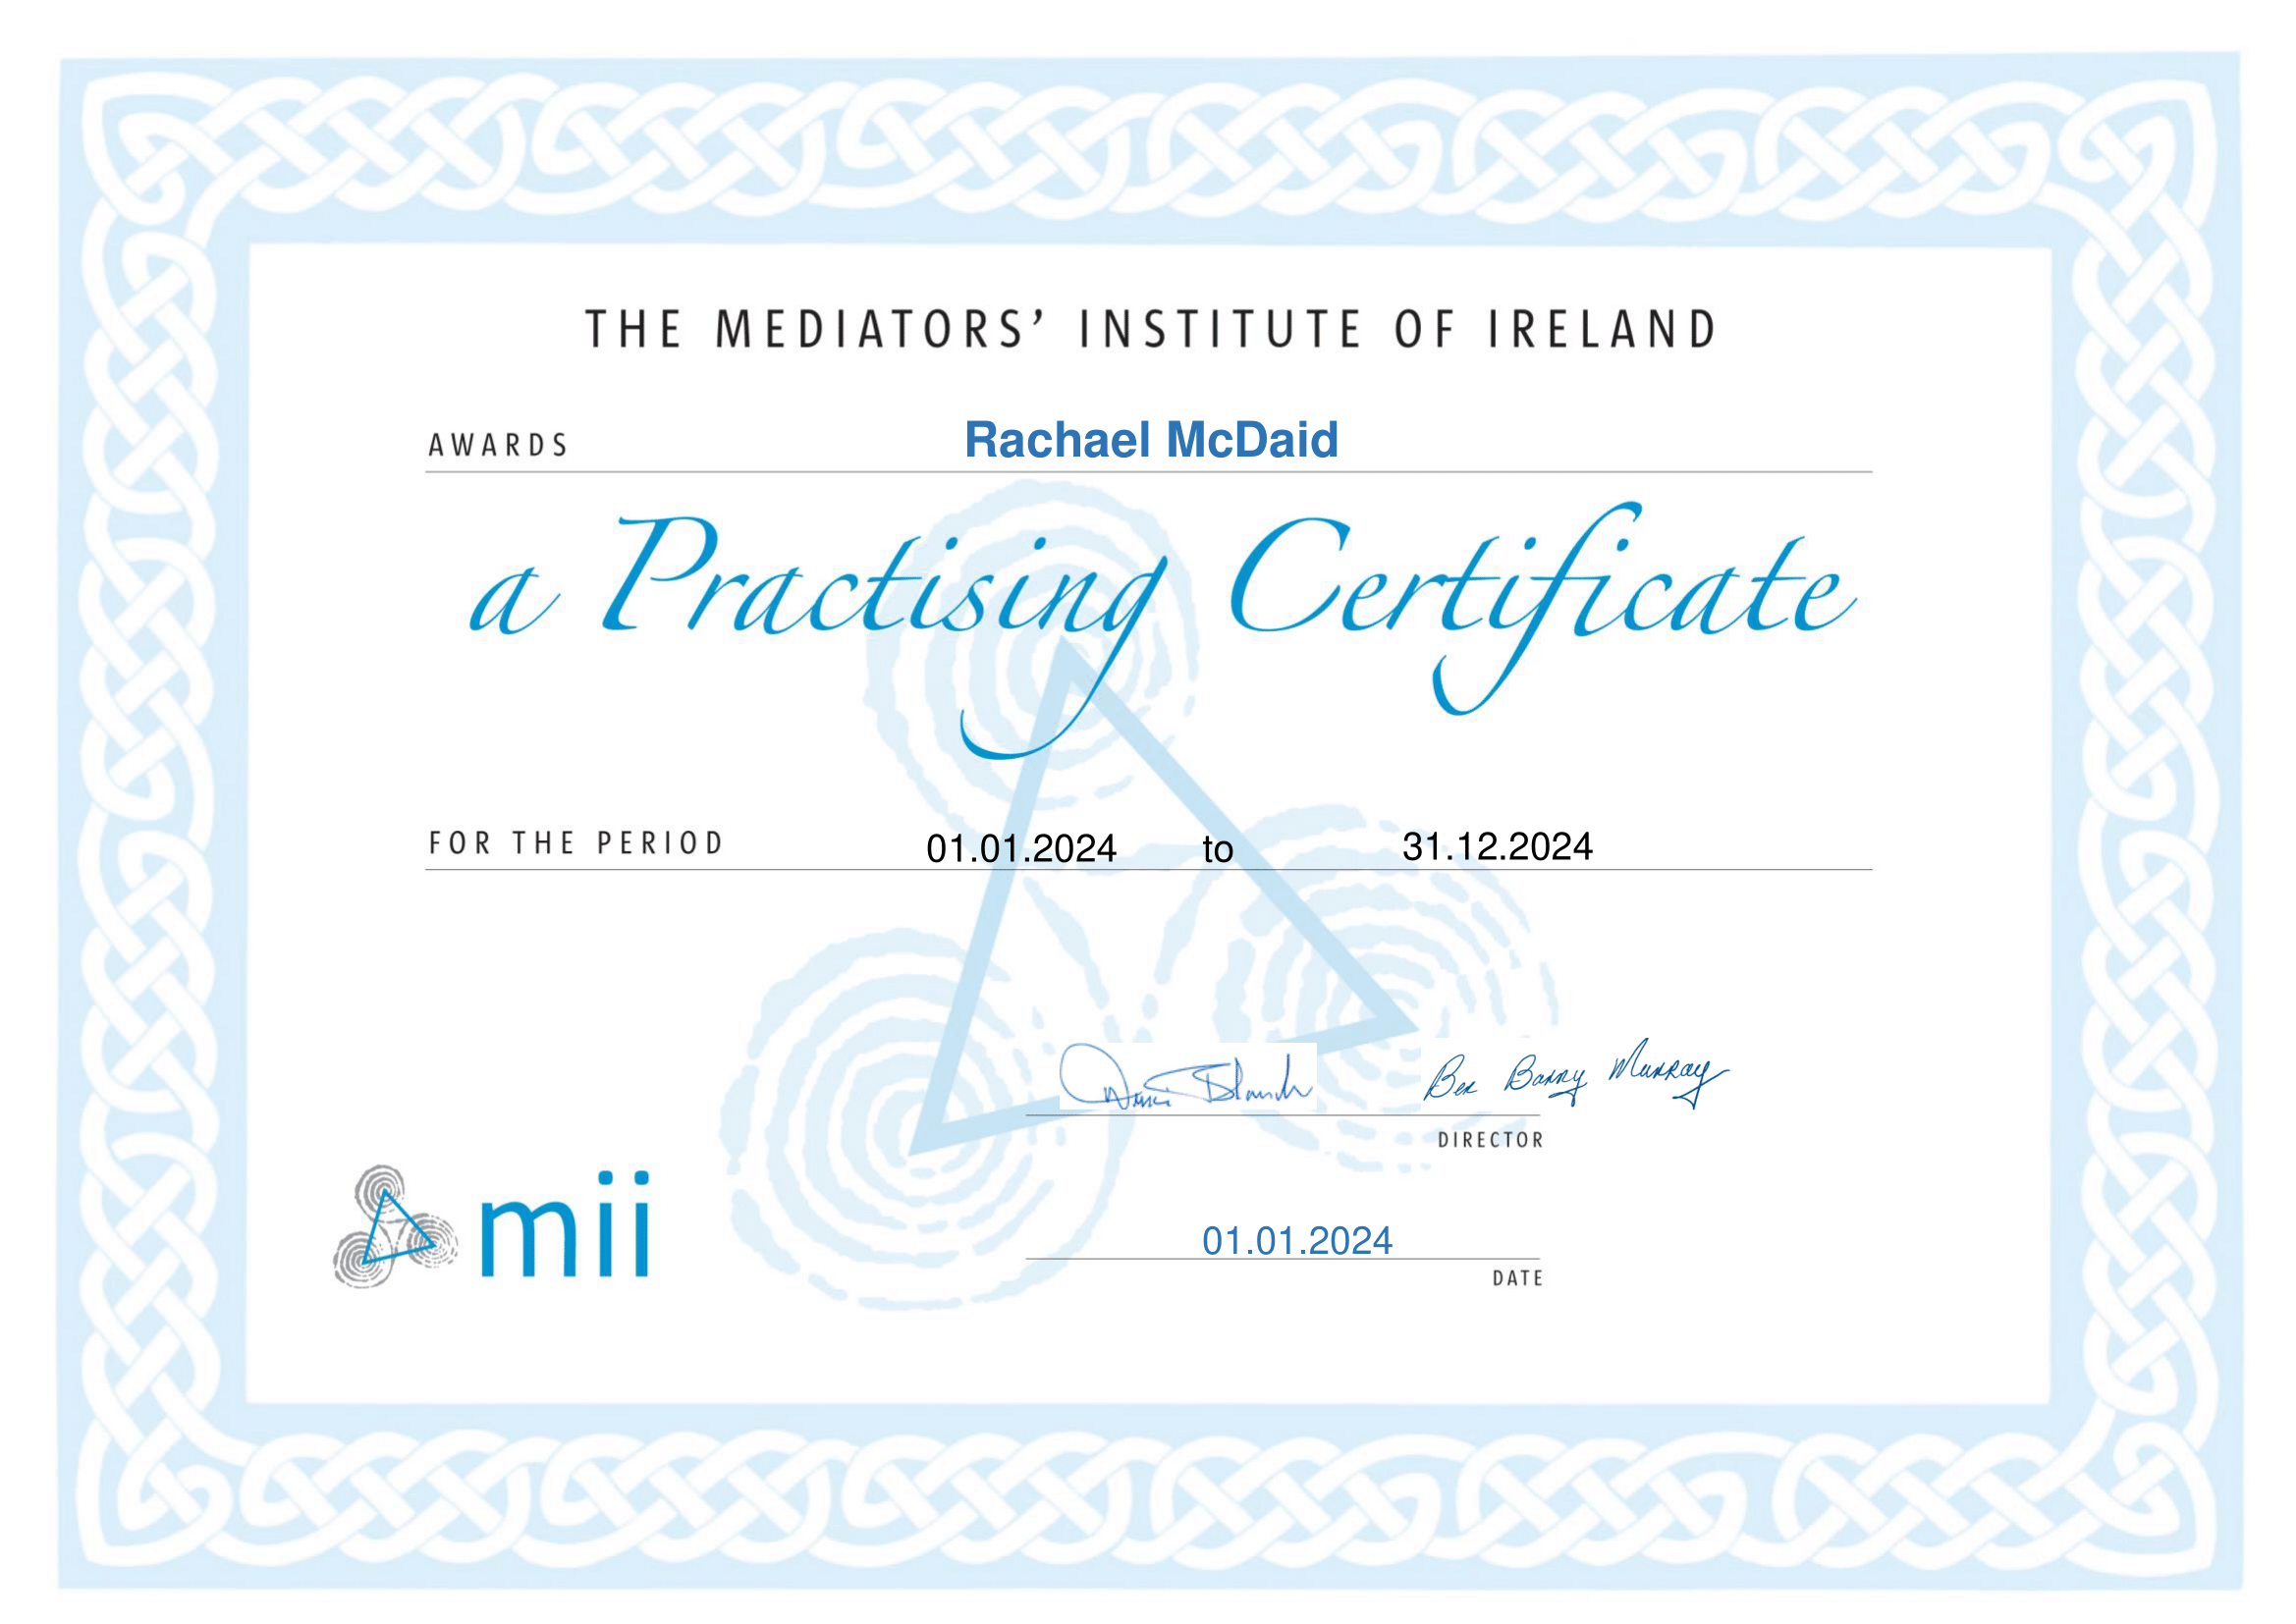 MII Practising Certificate 2024